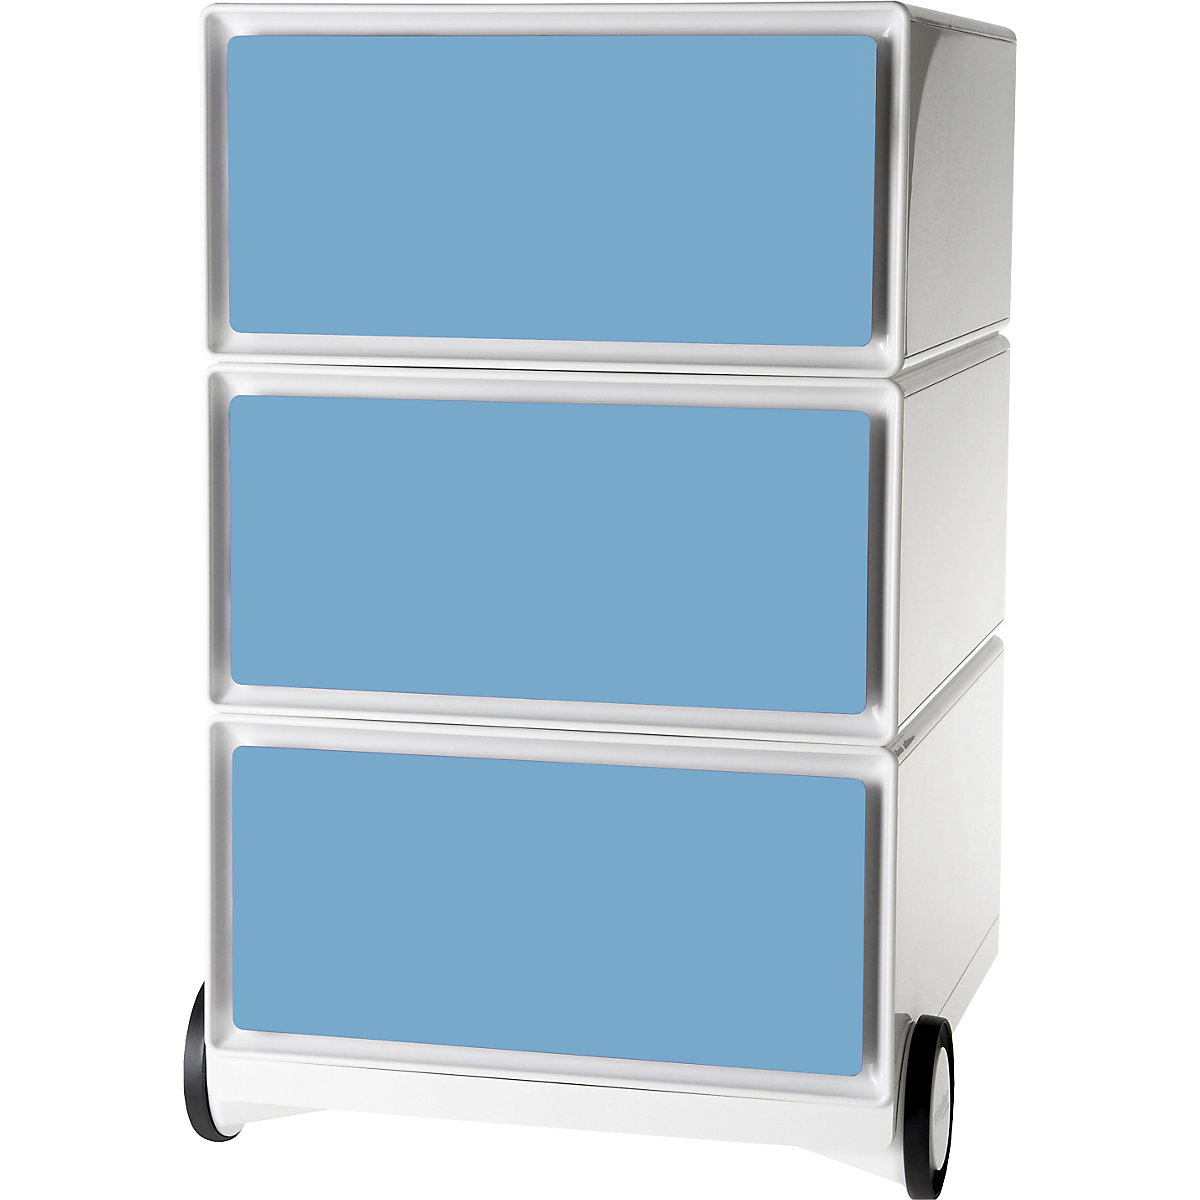 Pomični predalnik easyBox® – Paperflow, 3 predali, bele / modre barve-7